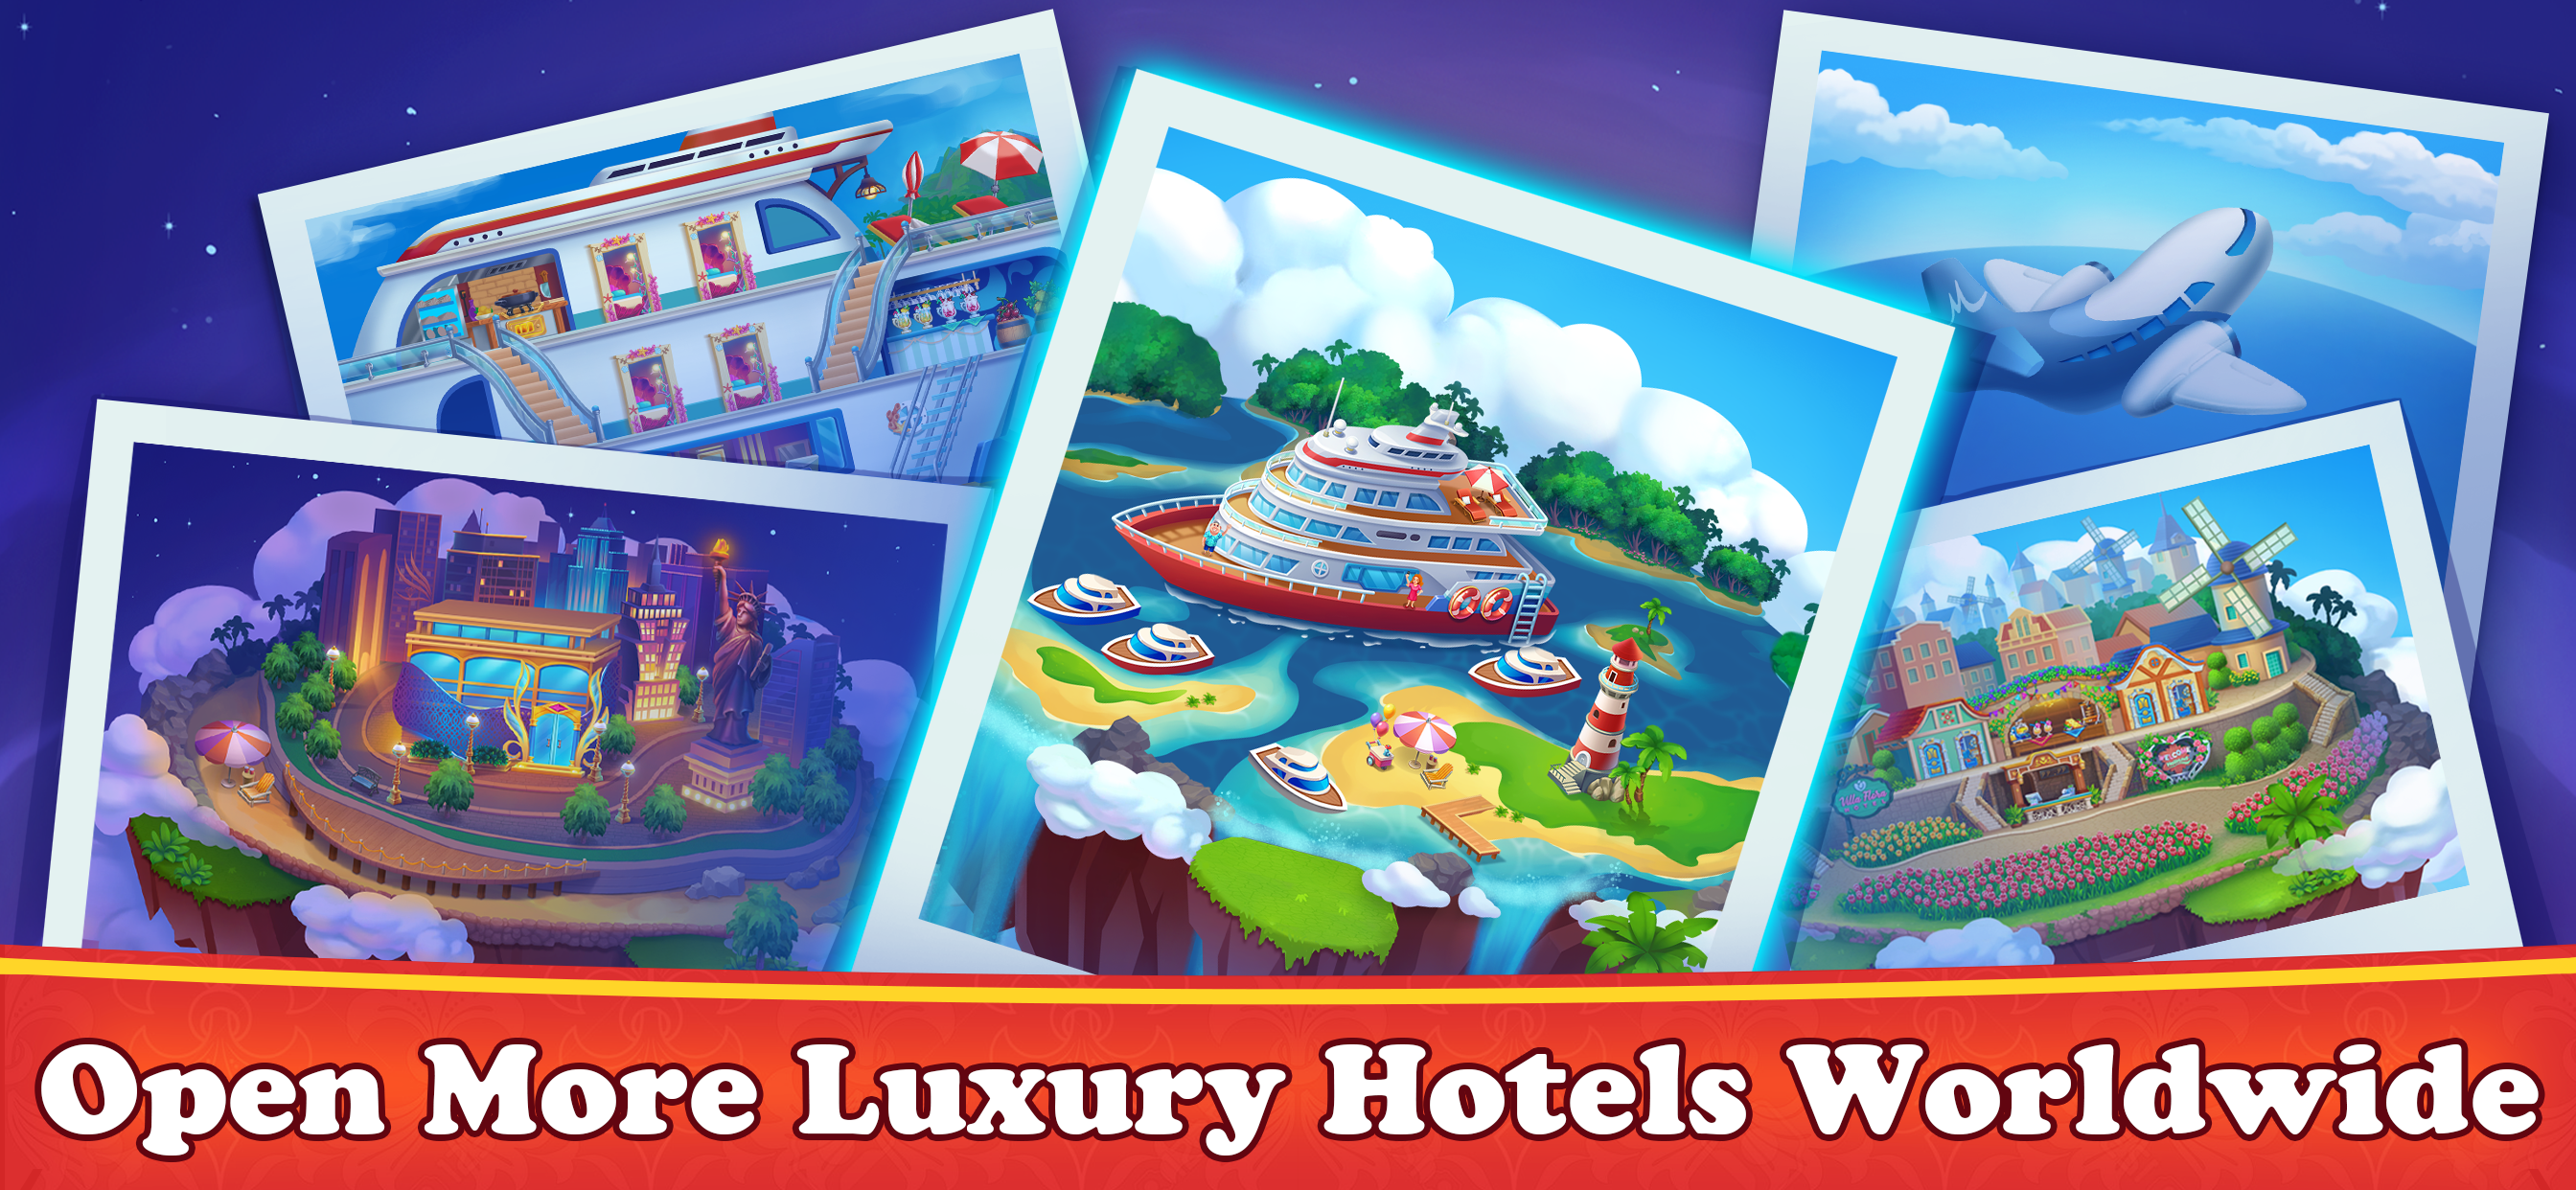 Hotel Diary - ホテルゲーム, ホテルゲームのキャプチャ